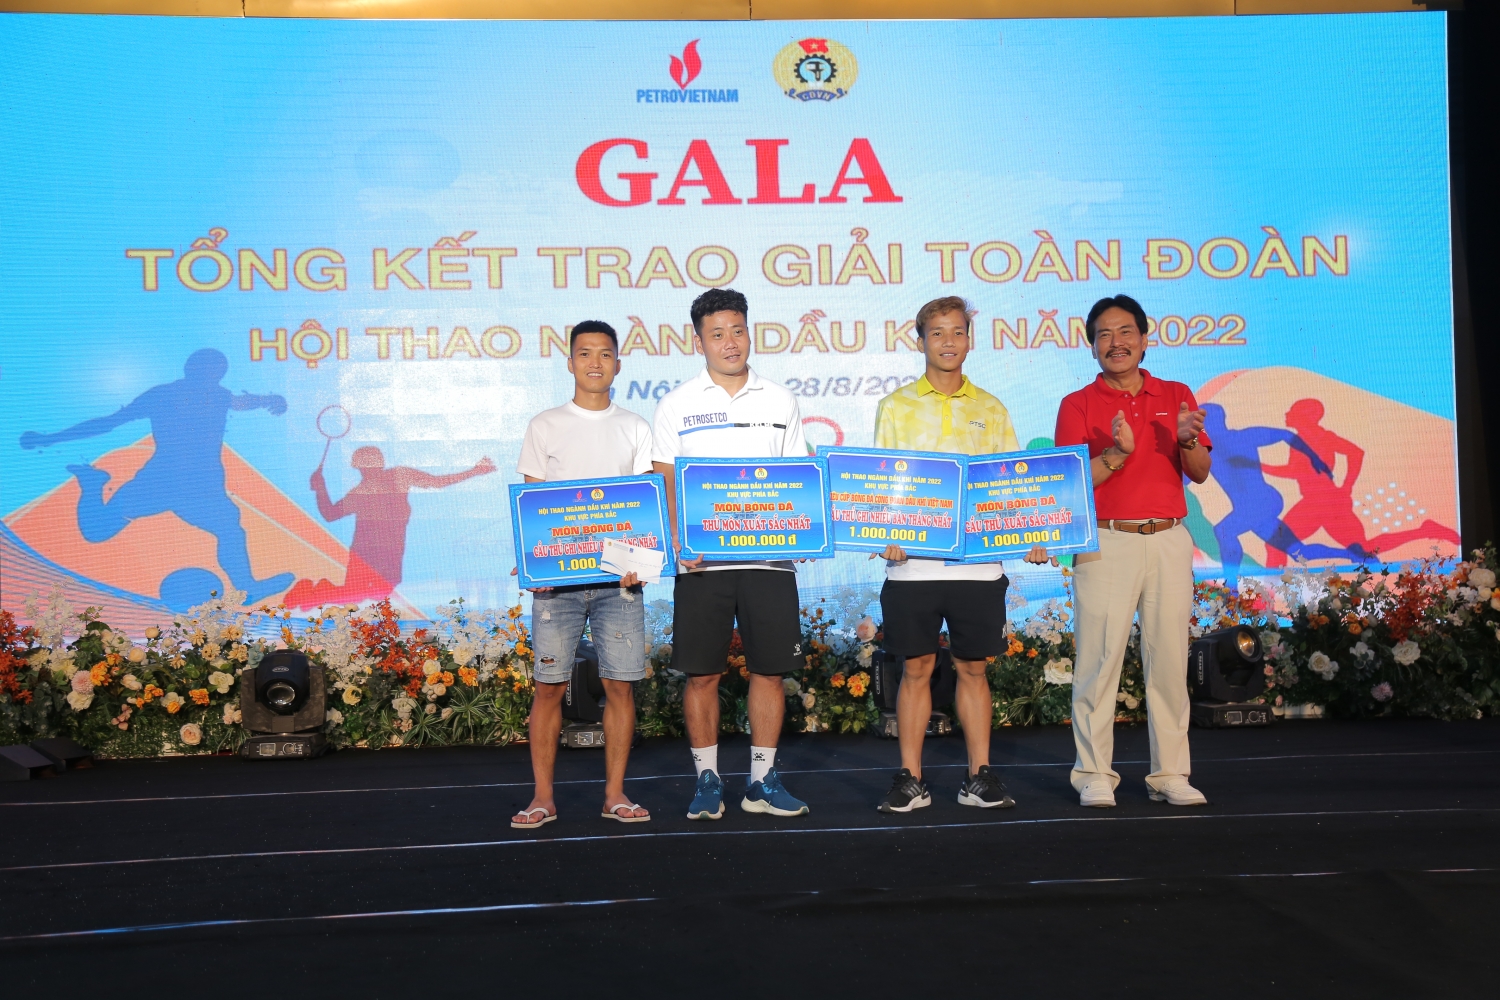 Đồng chí Nguyễn Hùng Dũng - Thành viên HĐTV Tập đoàn trao giải cá nhân cho các vận động viên đạt thành tích trong môn bóng đá